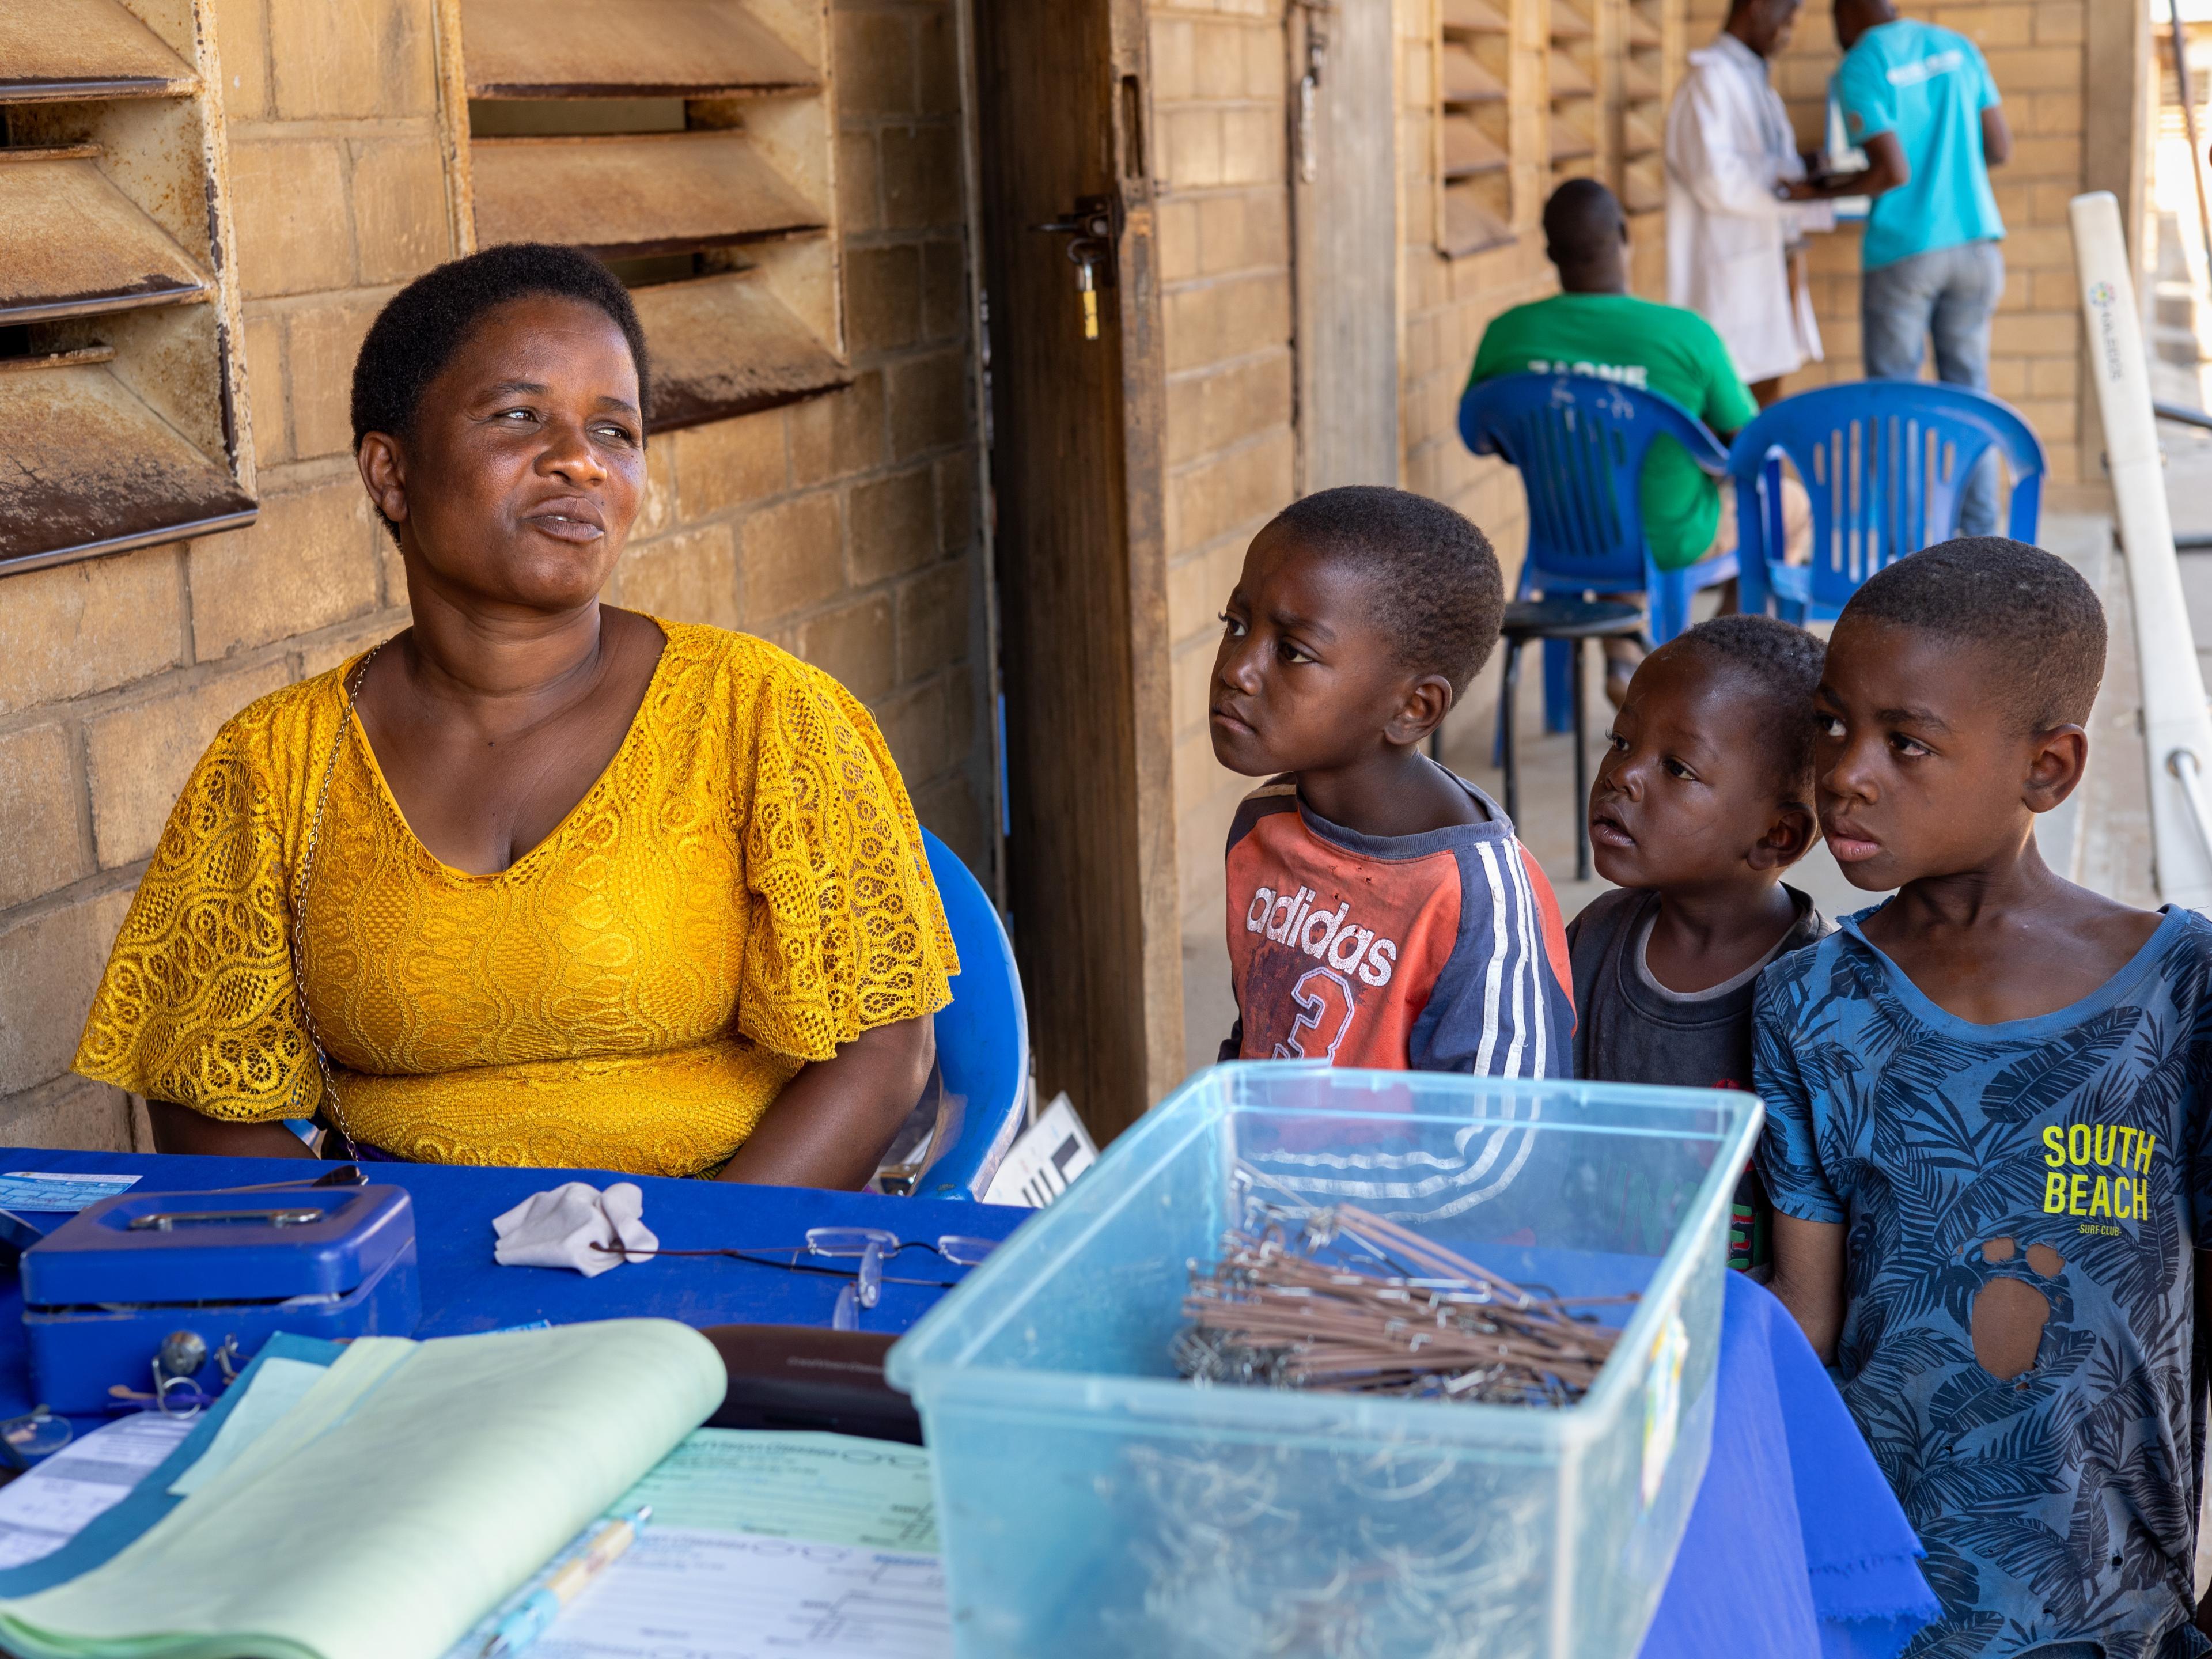 Frau am Brillenverkaufsstand von GoodVision Malawi, beobachtet von neugierigen Kindern